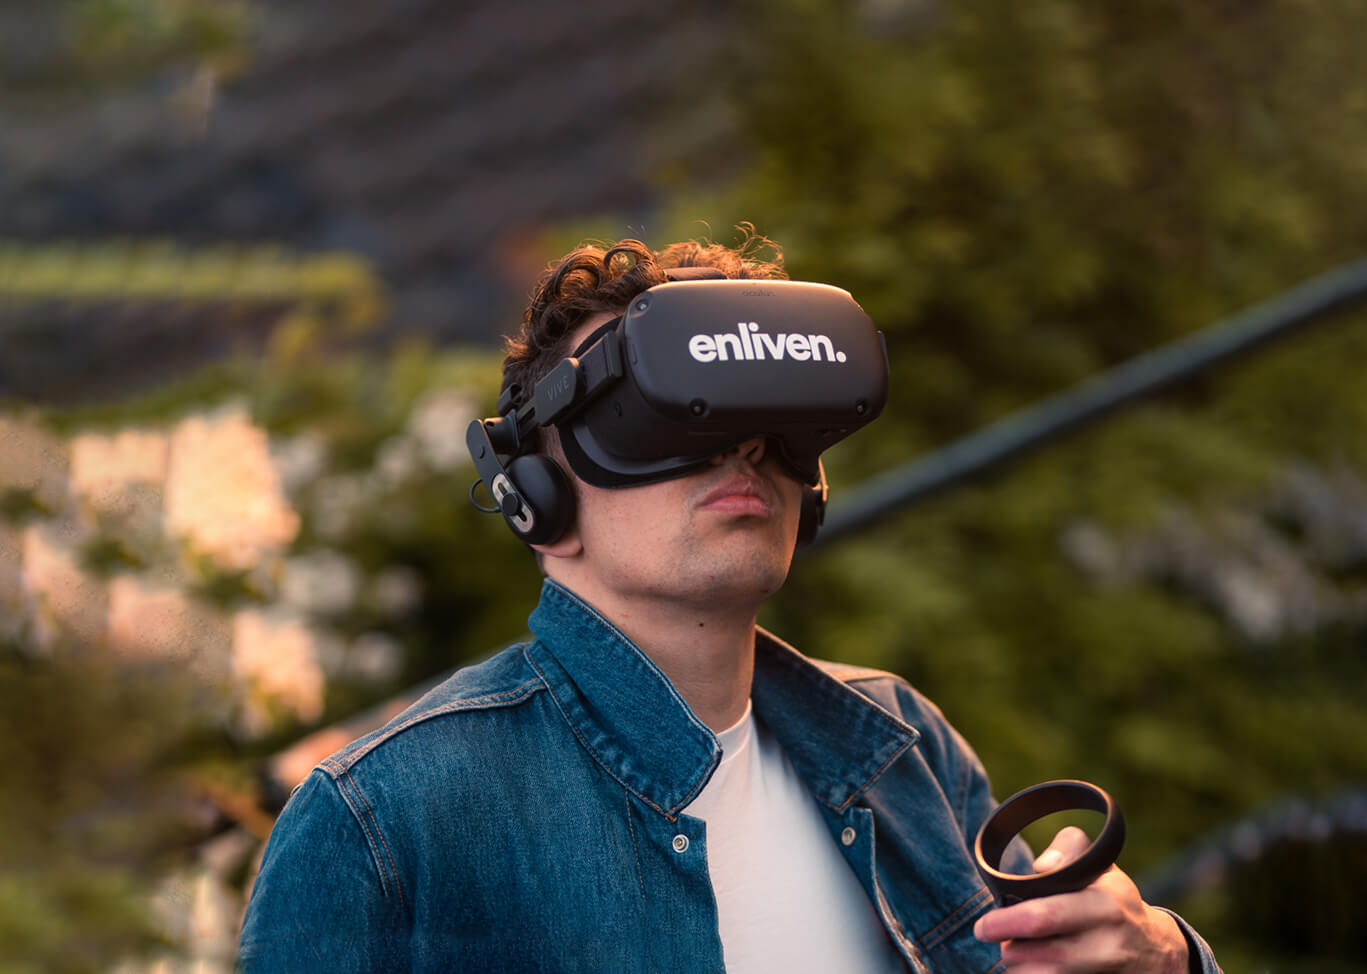 荷兰VR创企Enliven获100万欧元投资，以将VR模拟体验用于解决社会问题